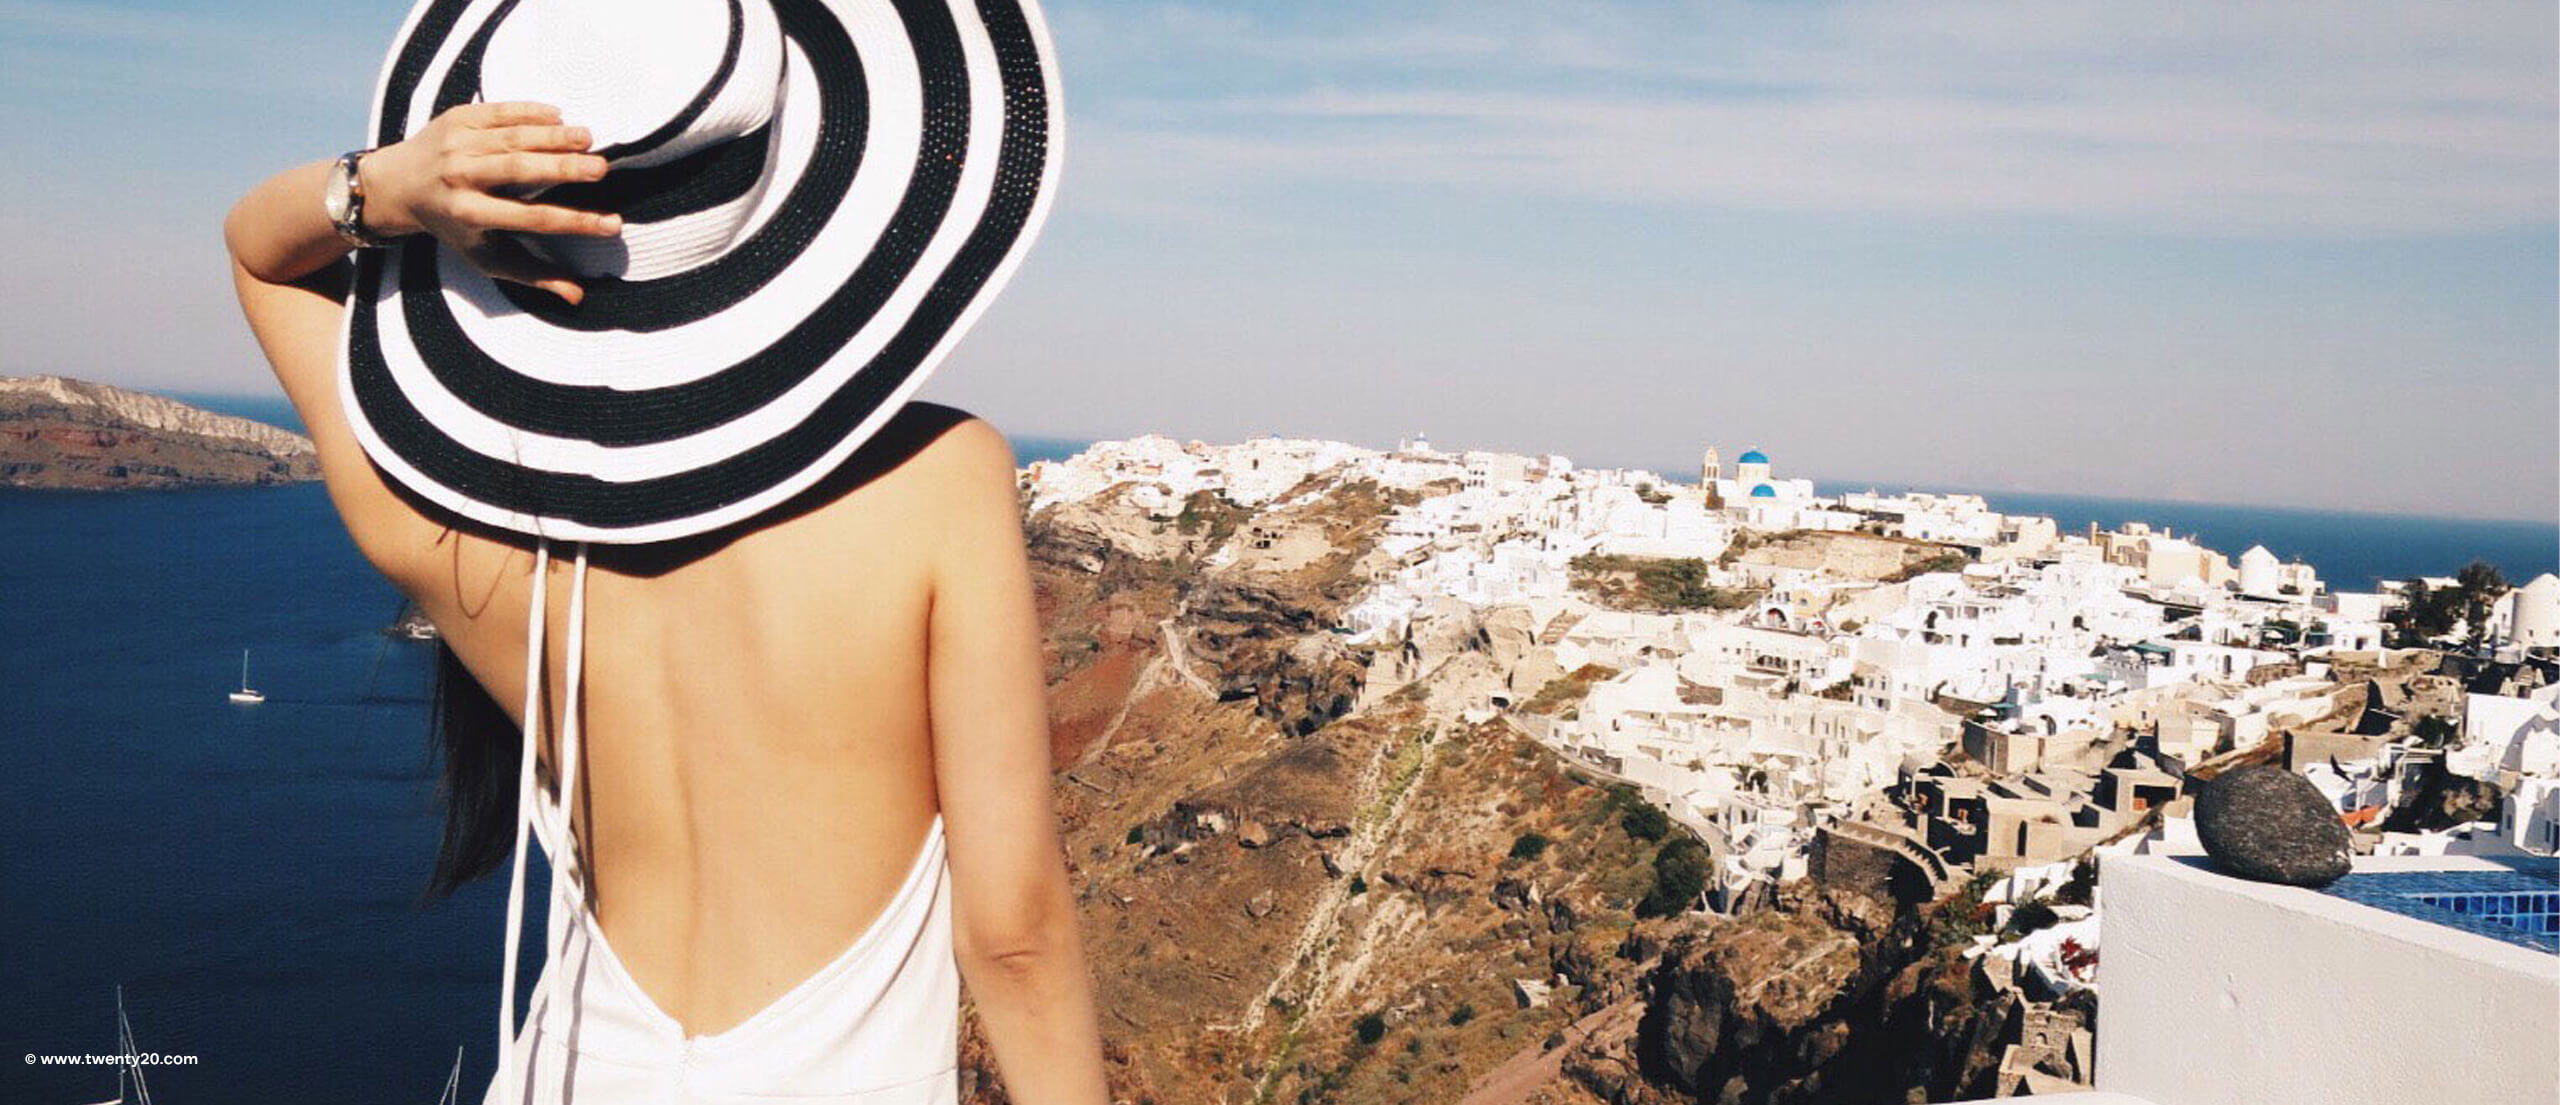 Frau mit rückenfreiem Kleid auf griechischer Insel